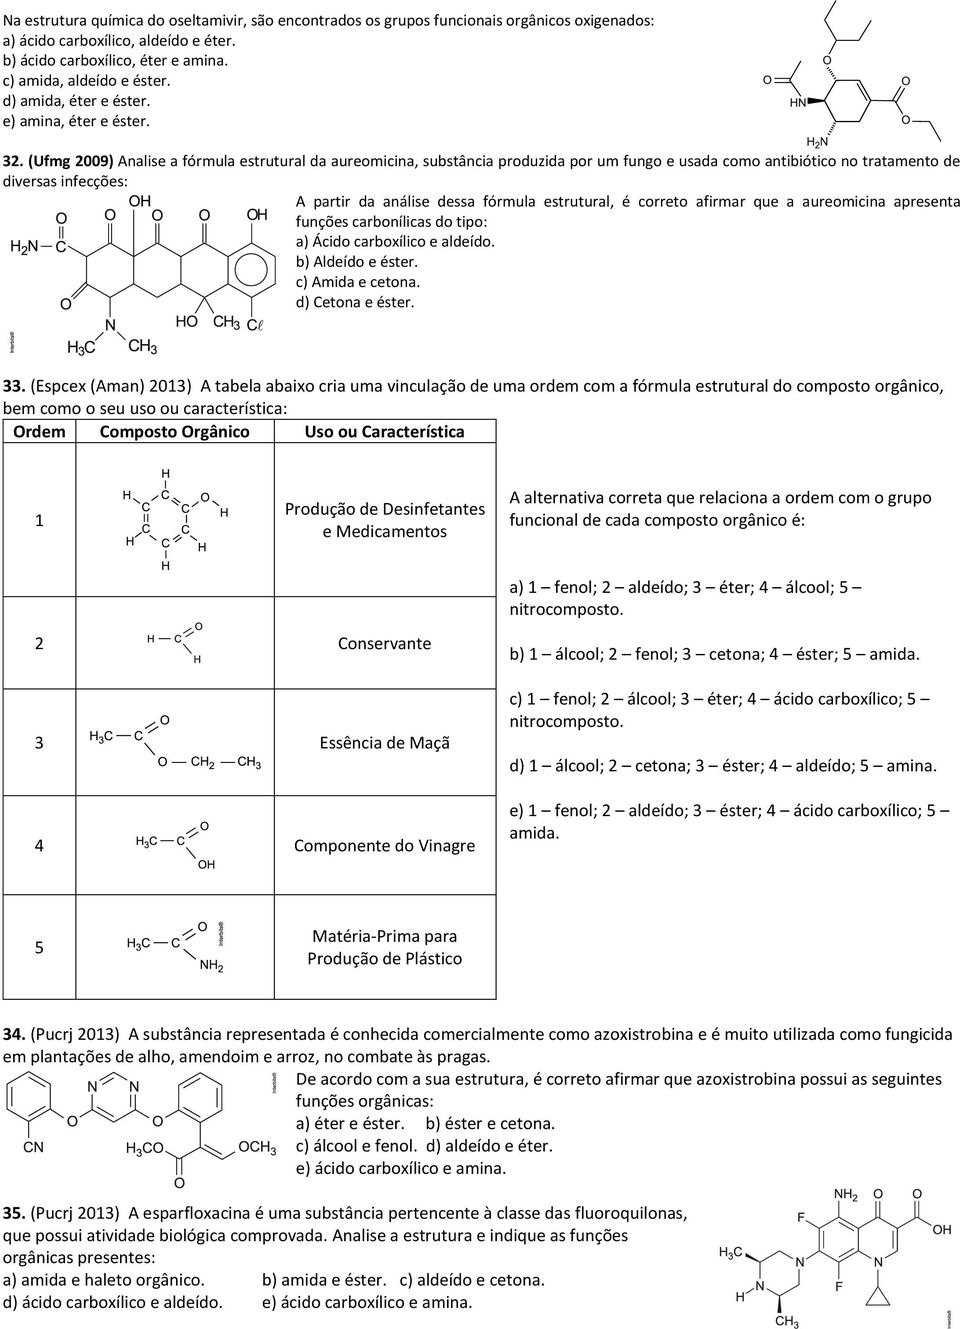 (Ufmg 2009) Analise a fórmula estrutural da aureomicina, substância produzida por um fungo e usada como antibiótico no tratamento de diversas infecções: A partir da análise dessa fórmula estrutural,